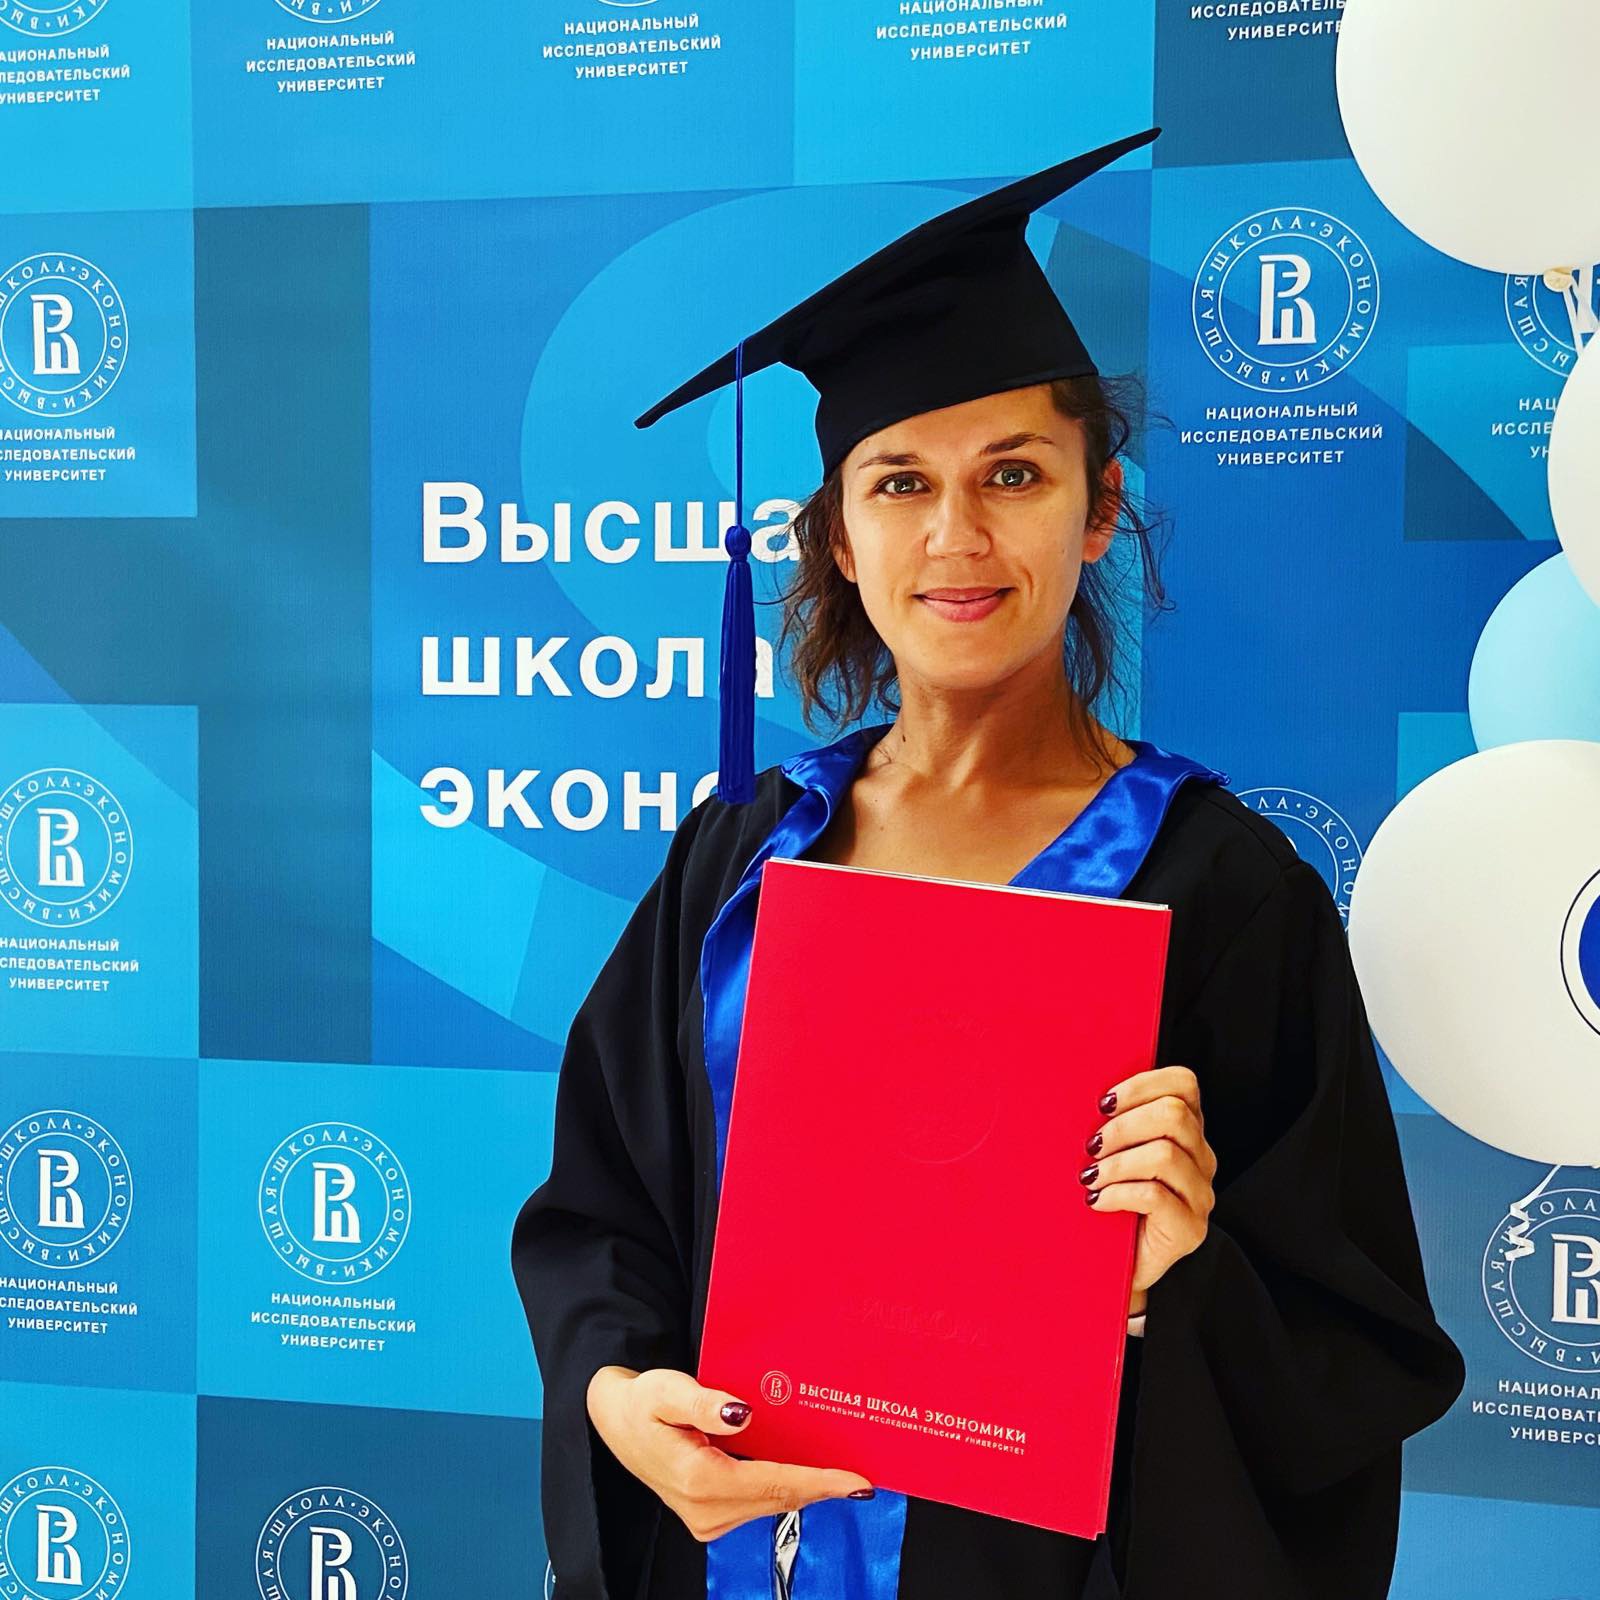 Екатерина Носкова, выпускница программы, заместитель директора по маркетингу ЗАО «Сталагмит» Кунгурской ледяной пещеры